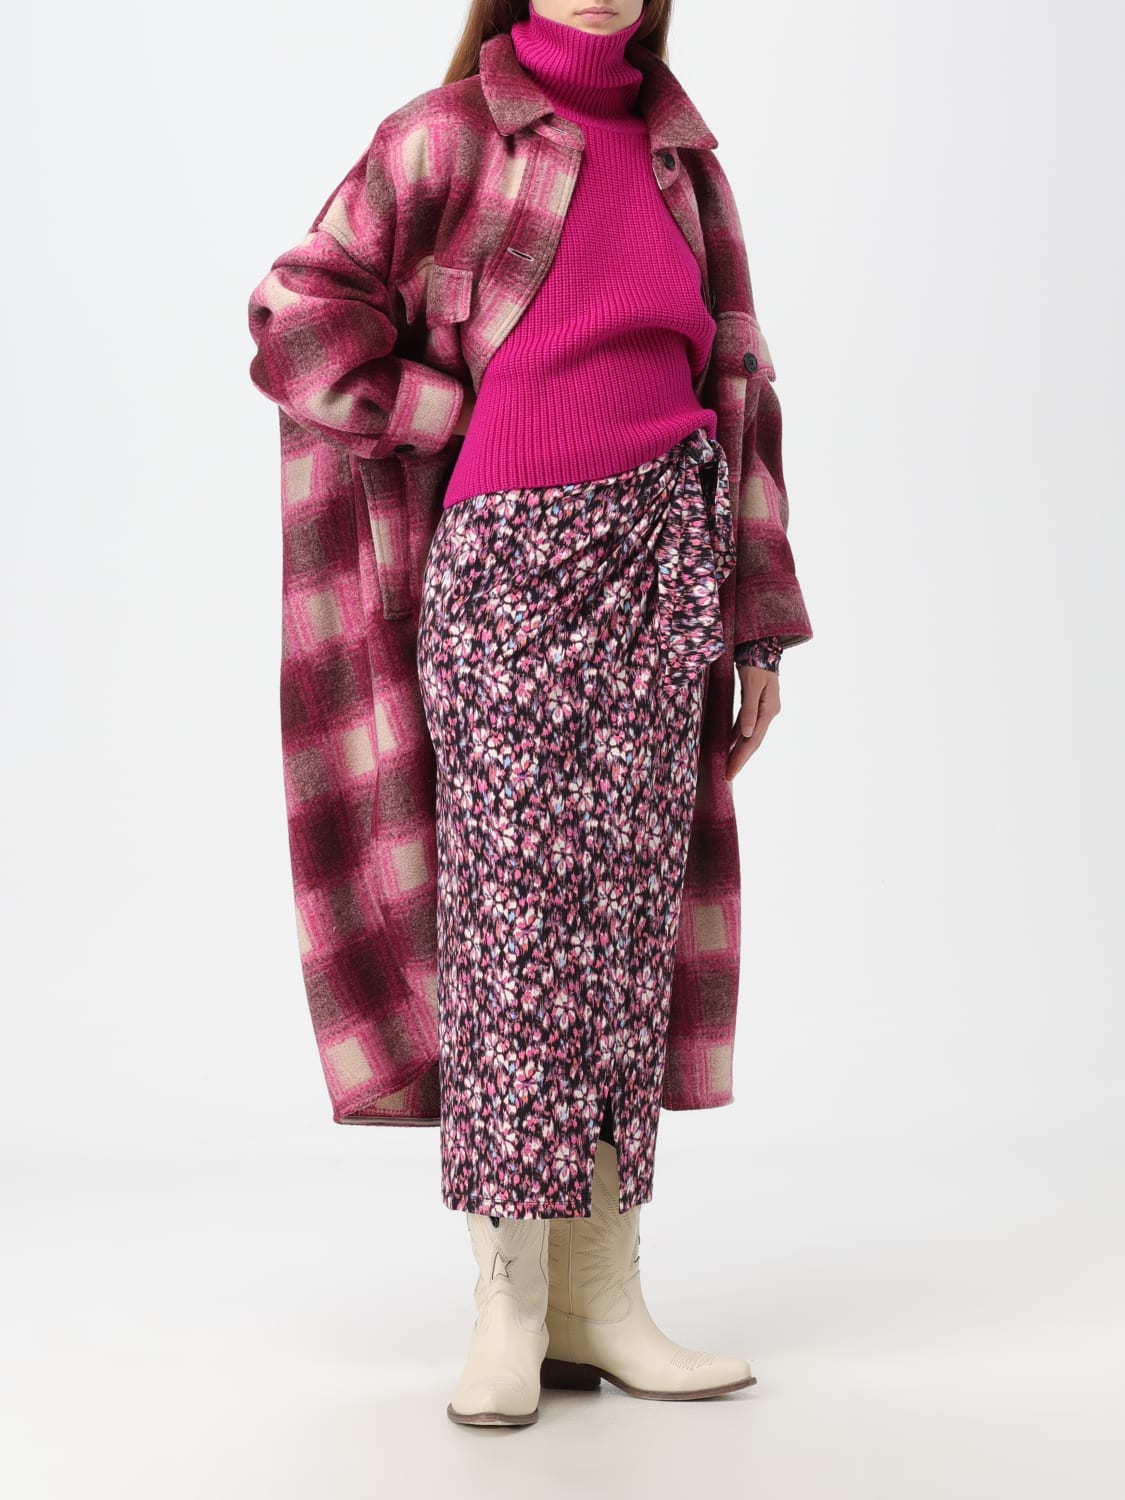 MARANT ETOILE: coat for woman - Fuchsia | Isabel Marant coat MA0018FAA3D27E online at GIGLIO.COM